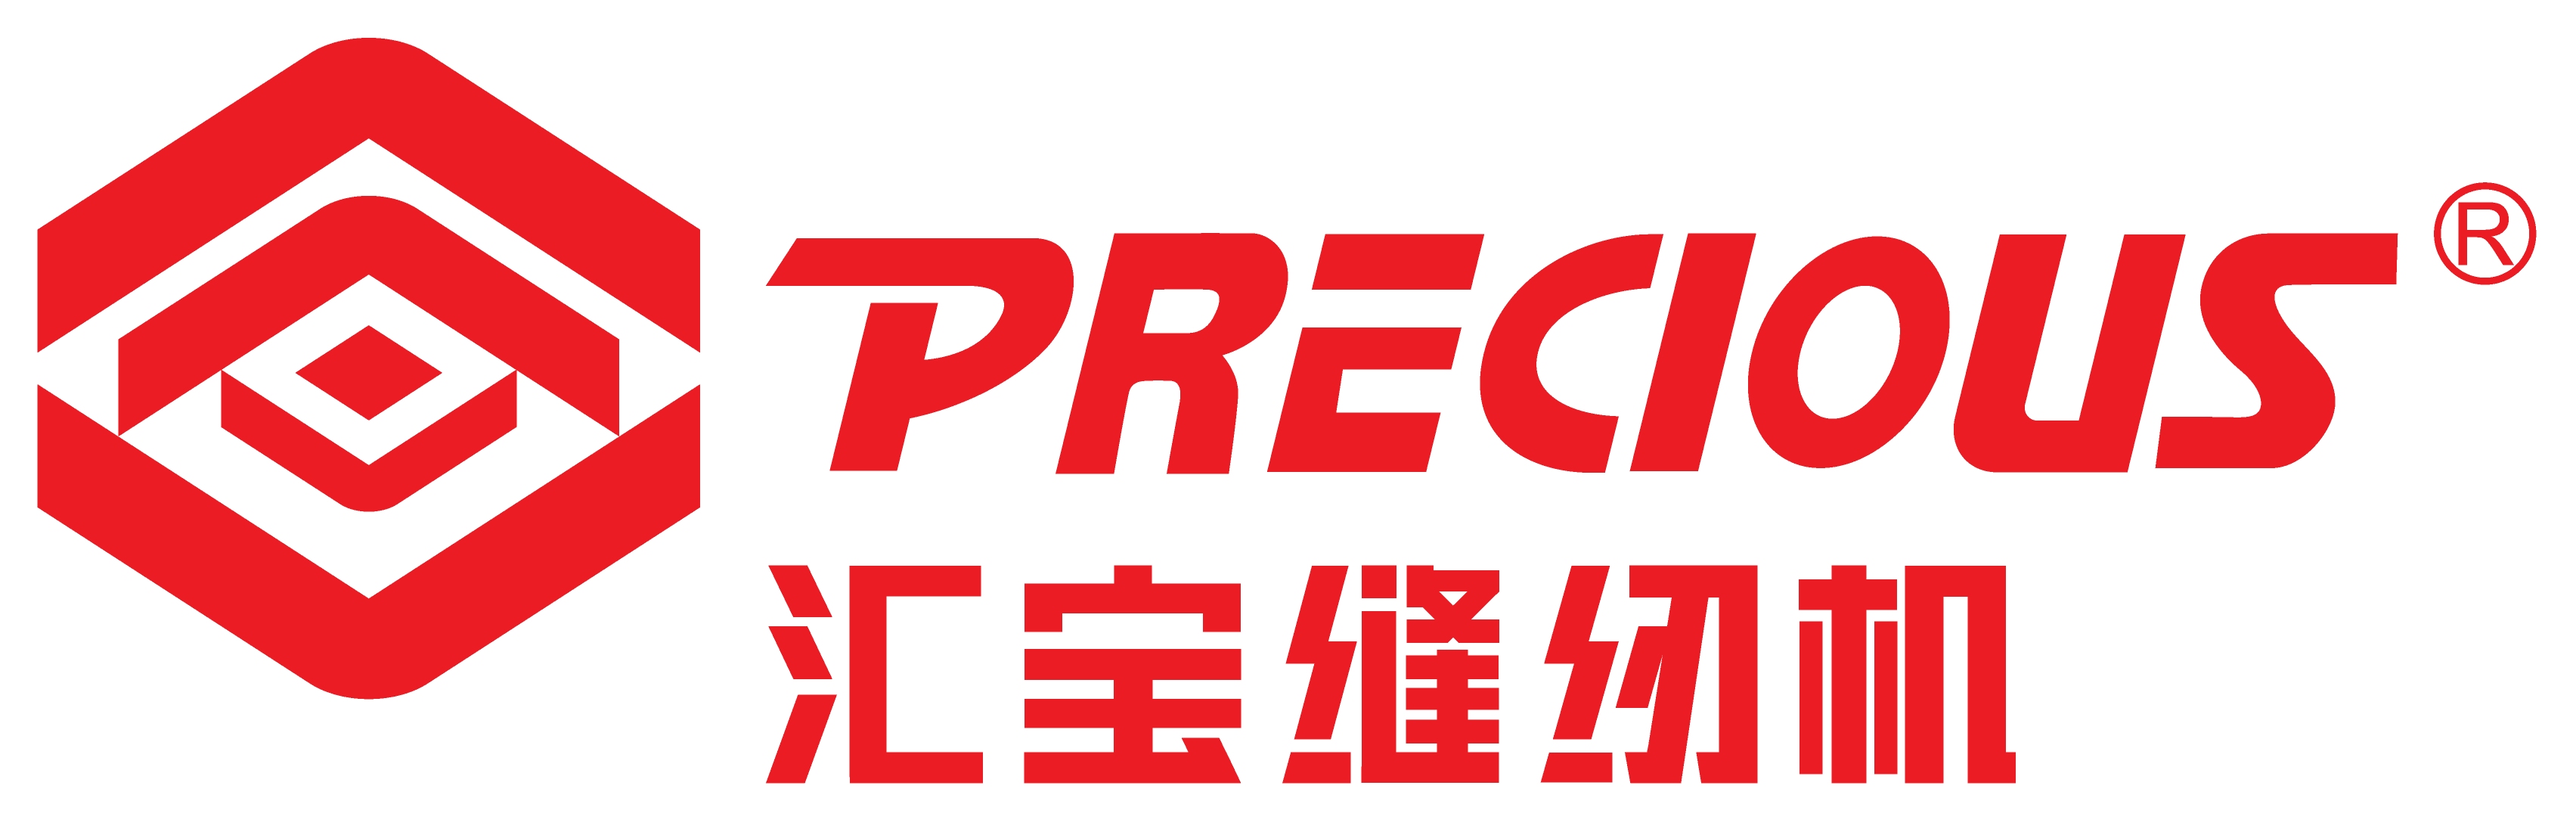 Precious-logo